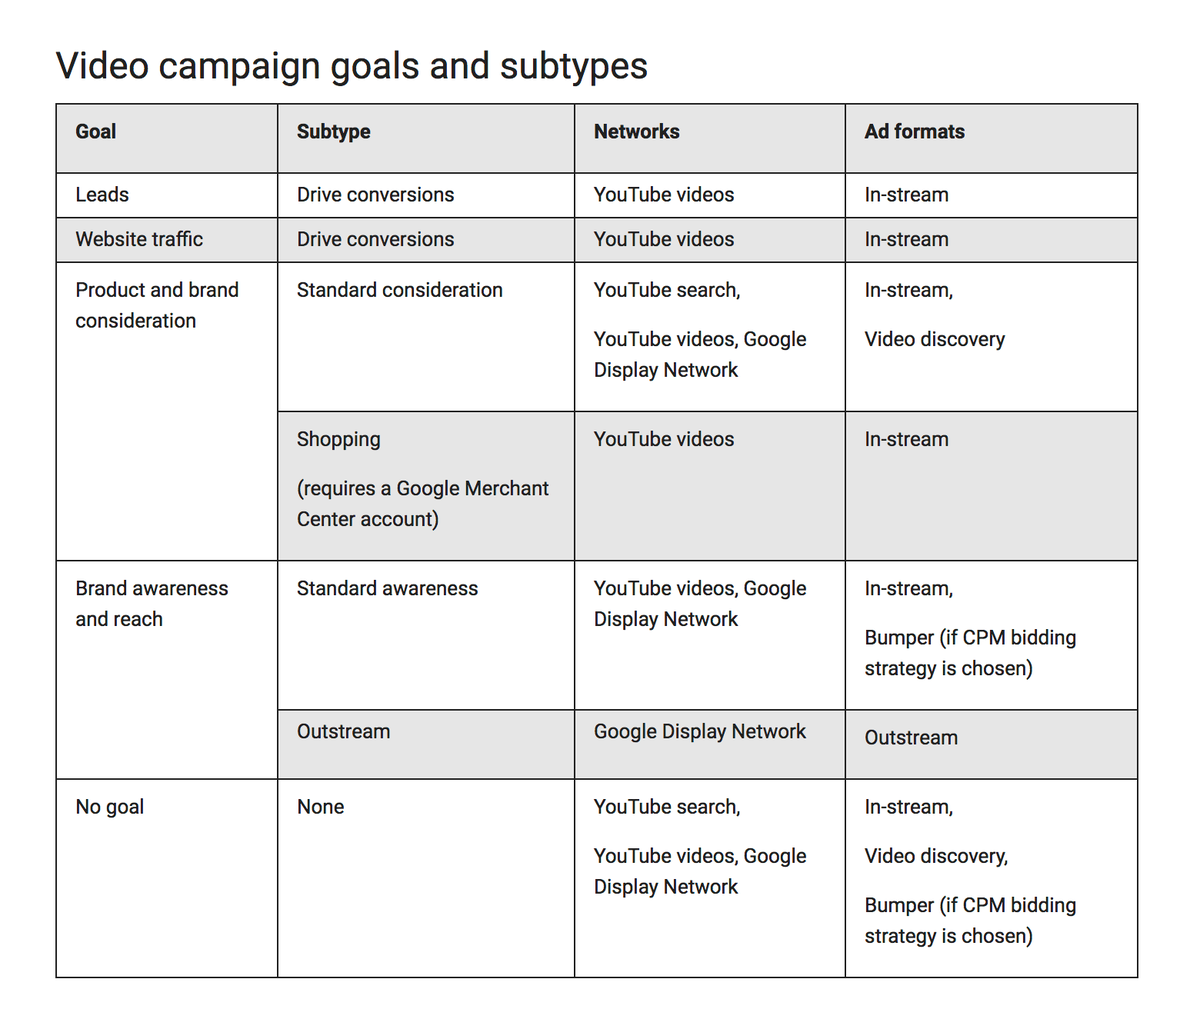 Ziele und Untertypen der Videokampagne